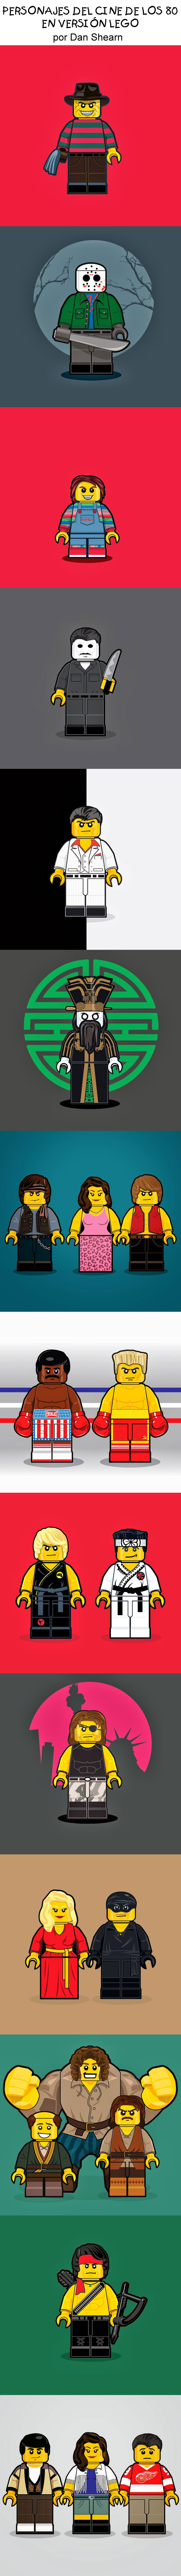 Personajes del cine de los 80 versión LEGO